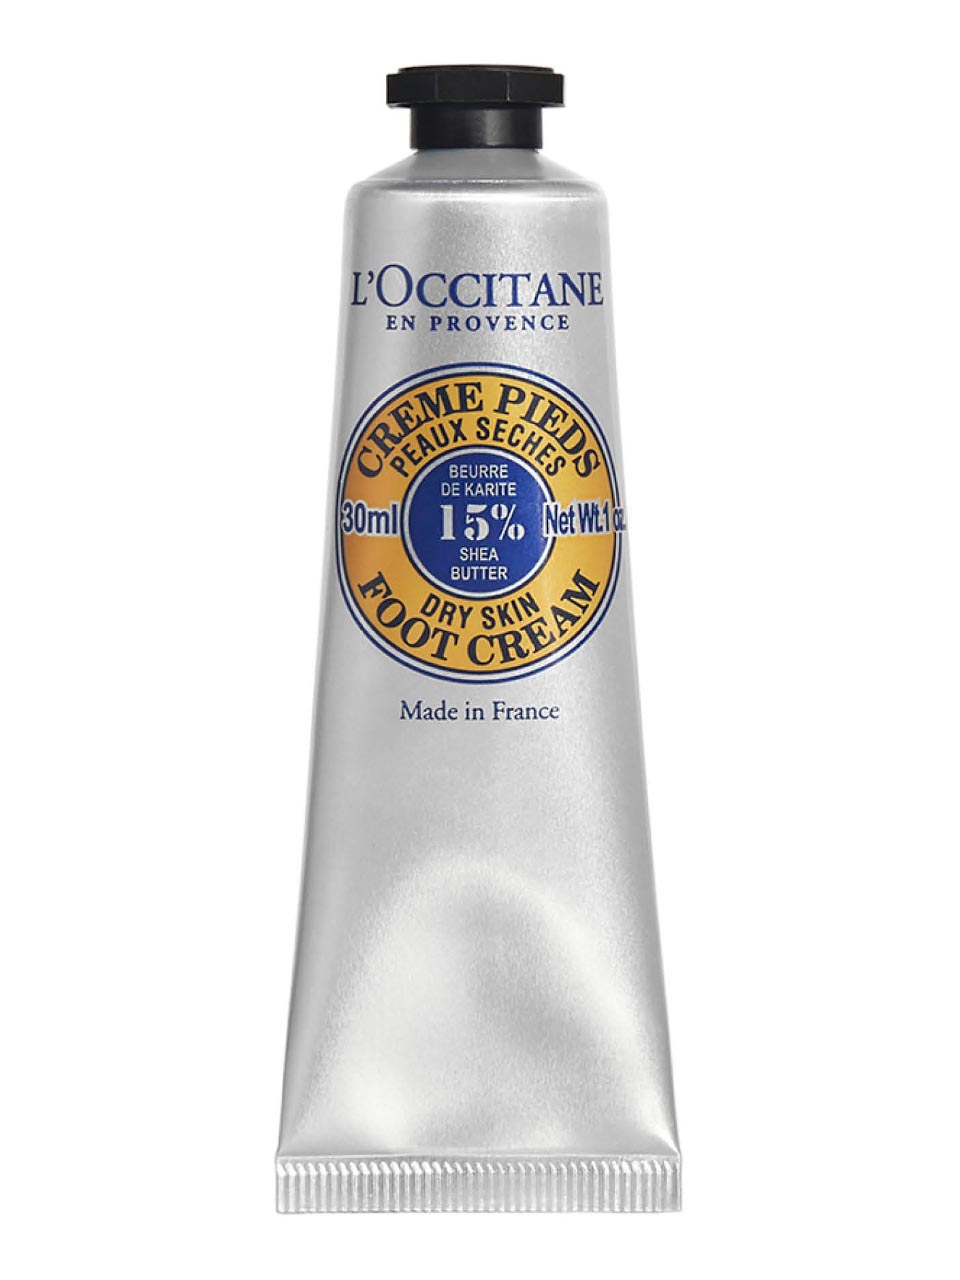 L'Occitane en Provence Karite-Shea Butter Foot Cream 30 ml null - onesize - 1